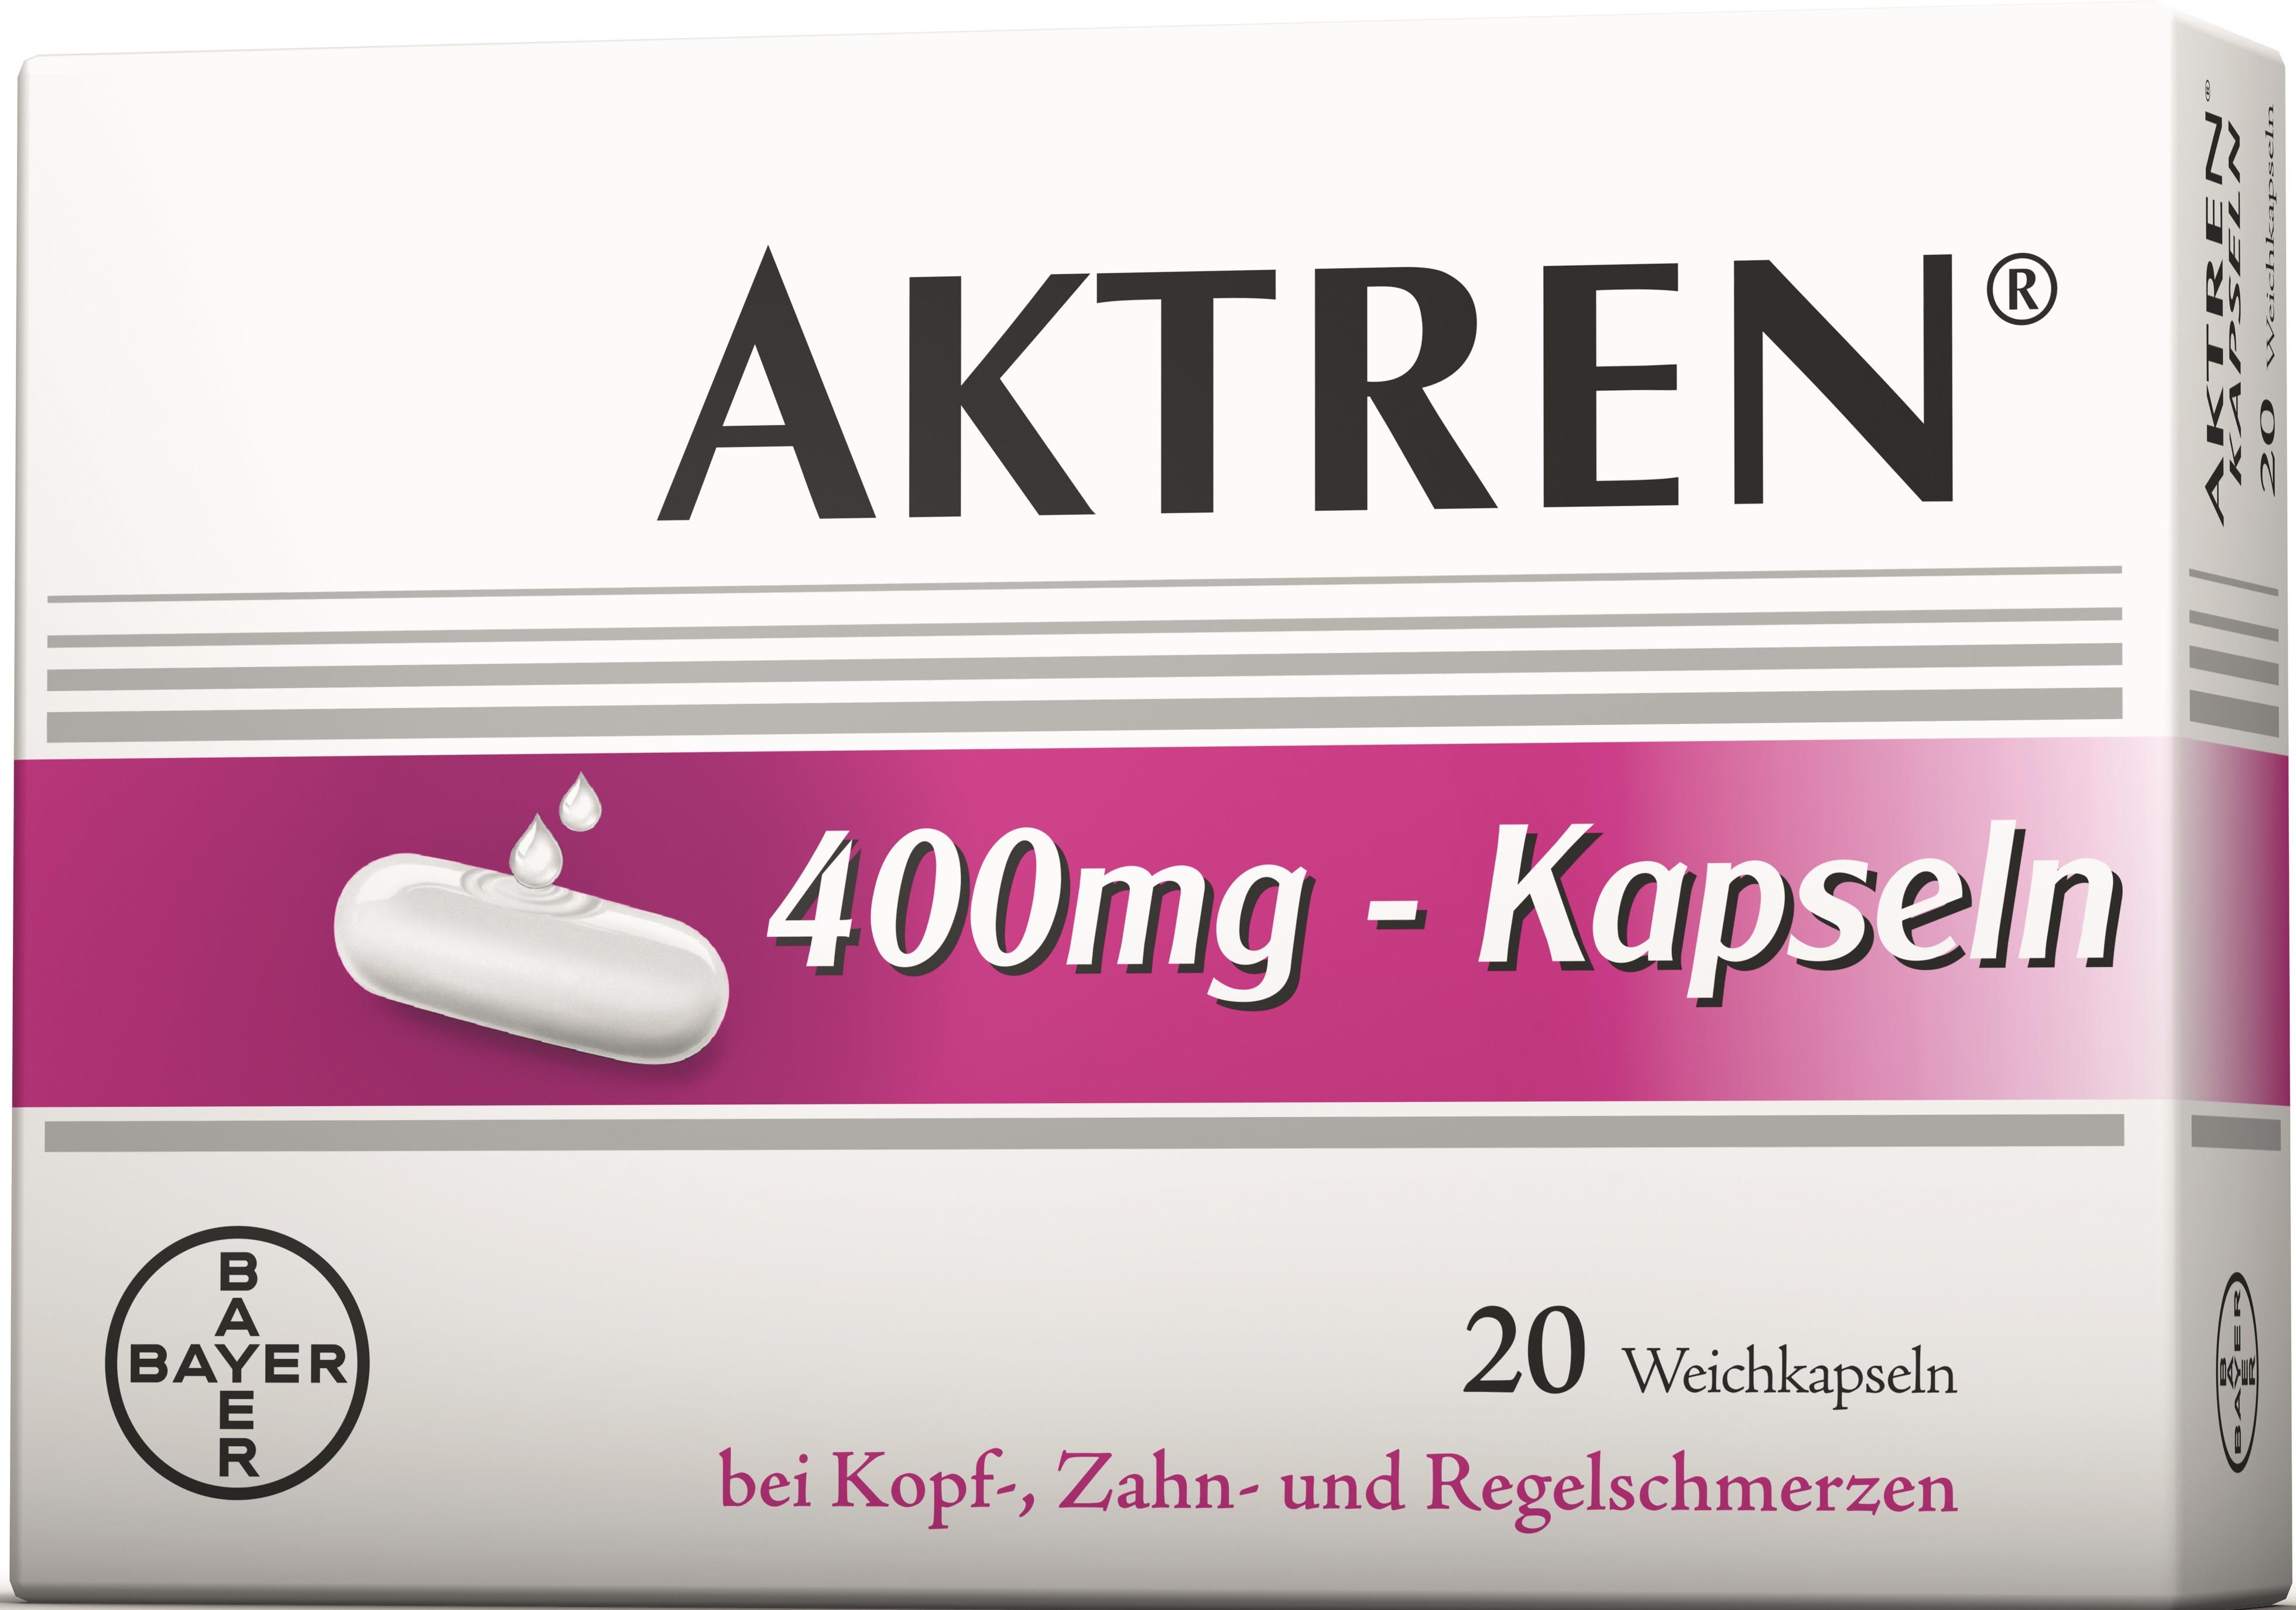 Aktren 400 mg - Kapseln